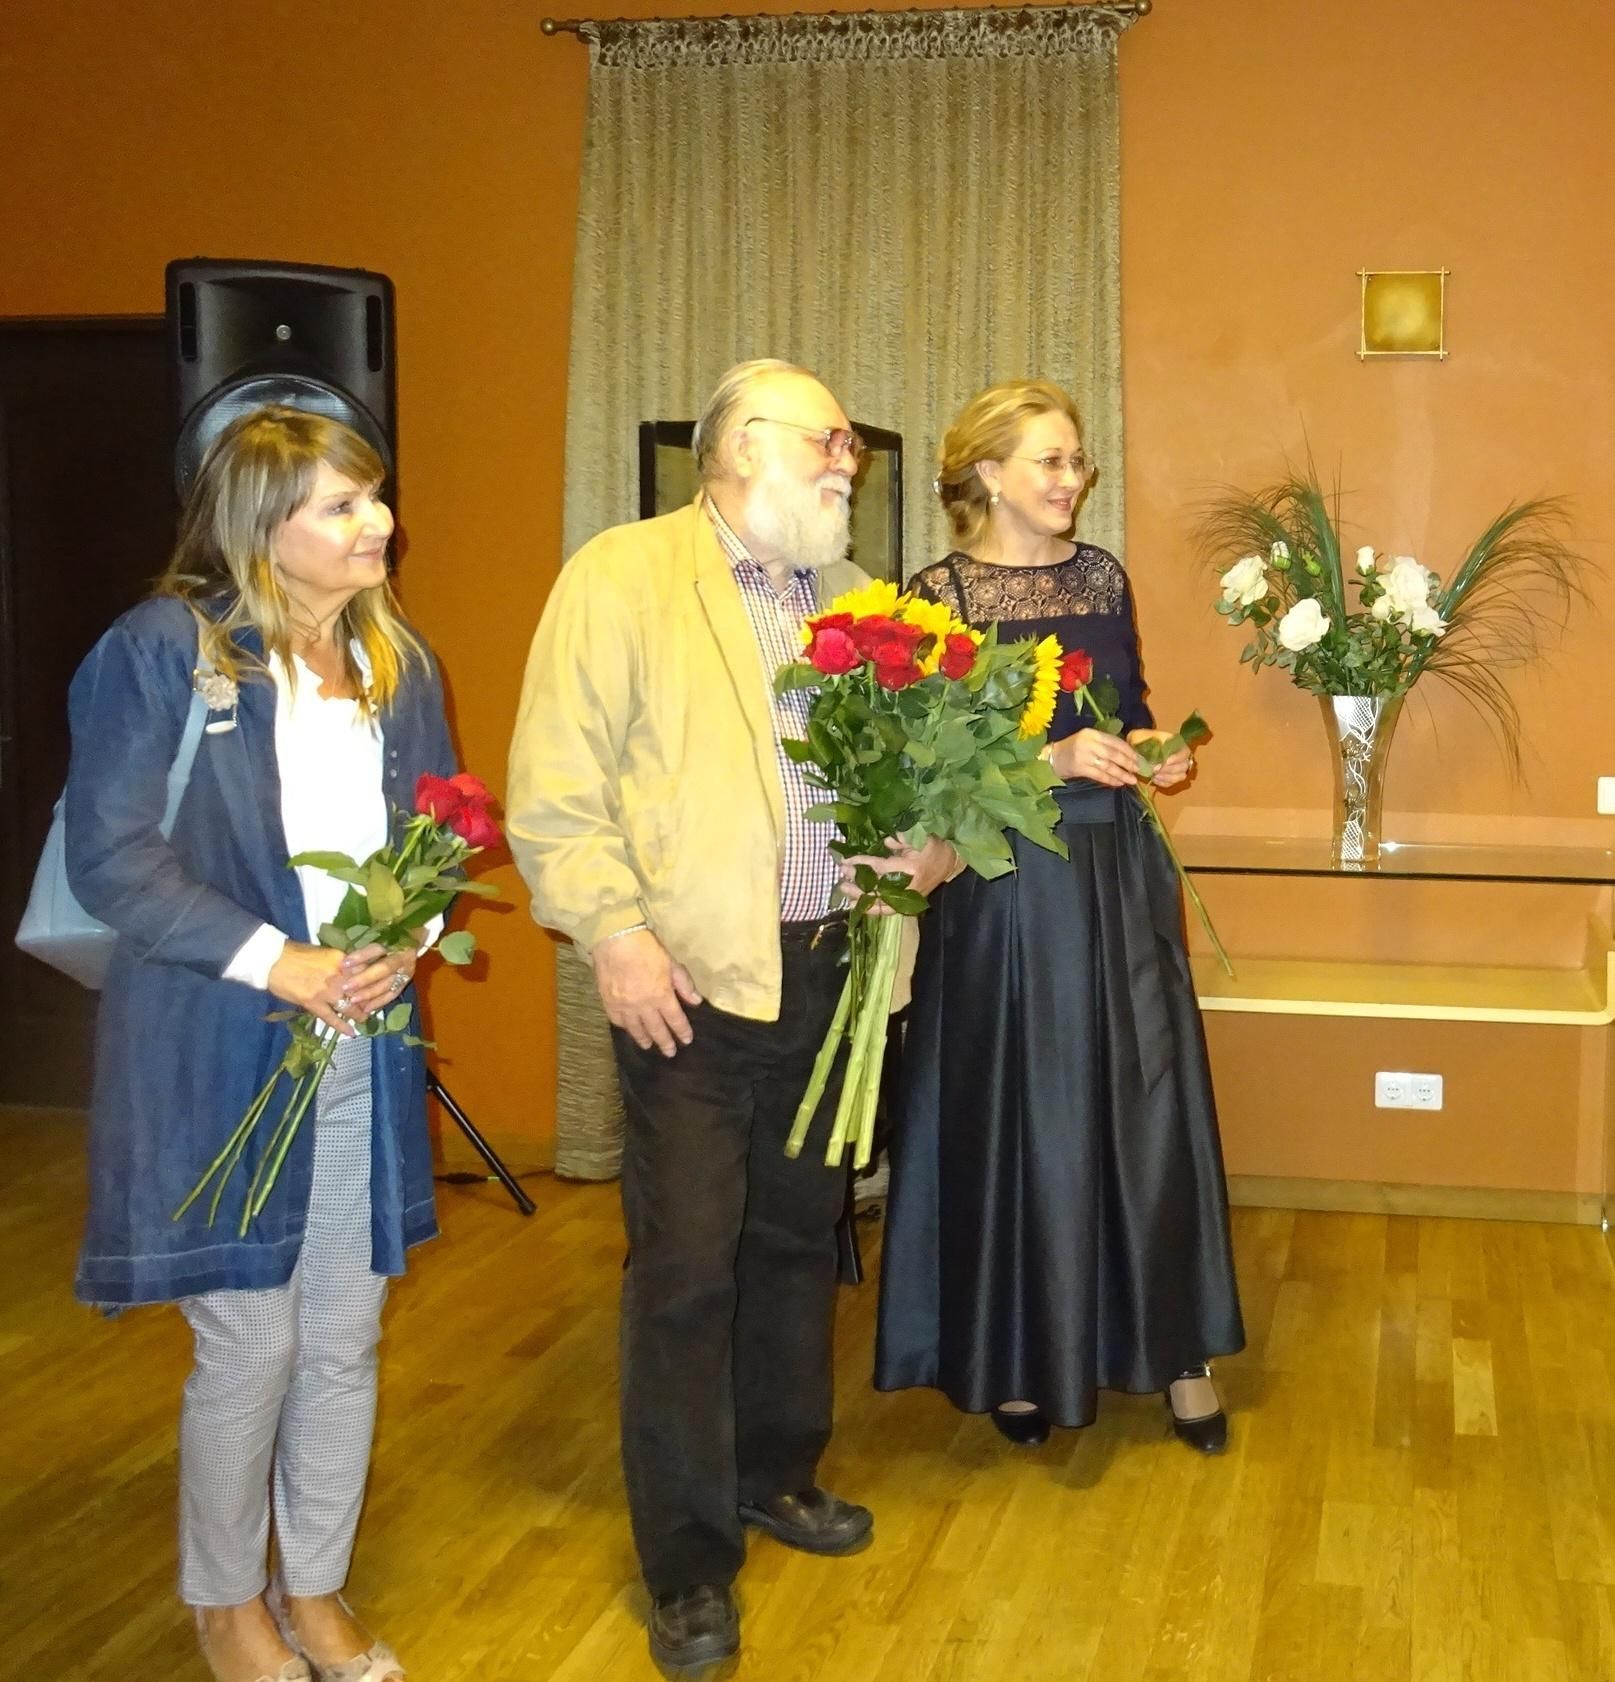 Авторы (cлева направо): Татьяна Максименко, Владимир Богатырёв, Оксана Юозайтене